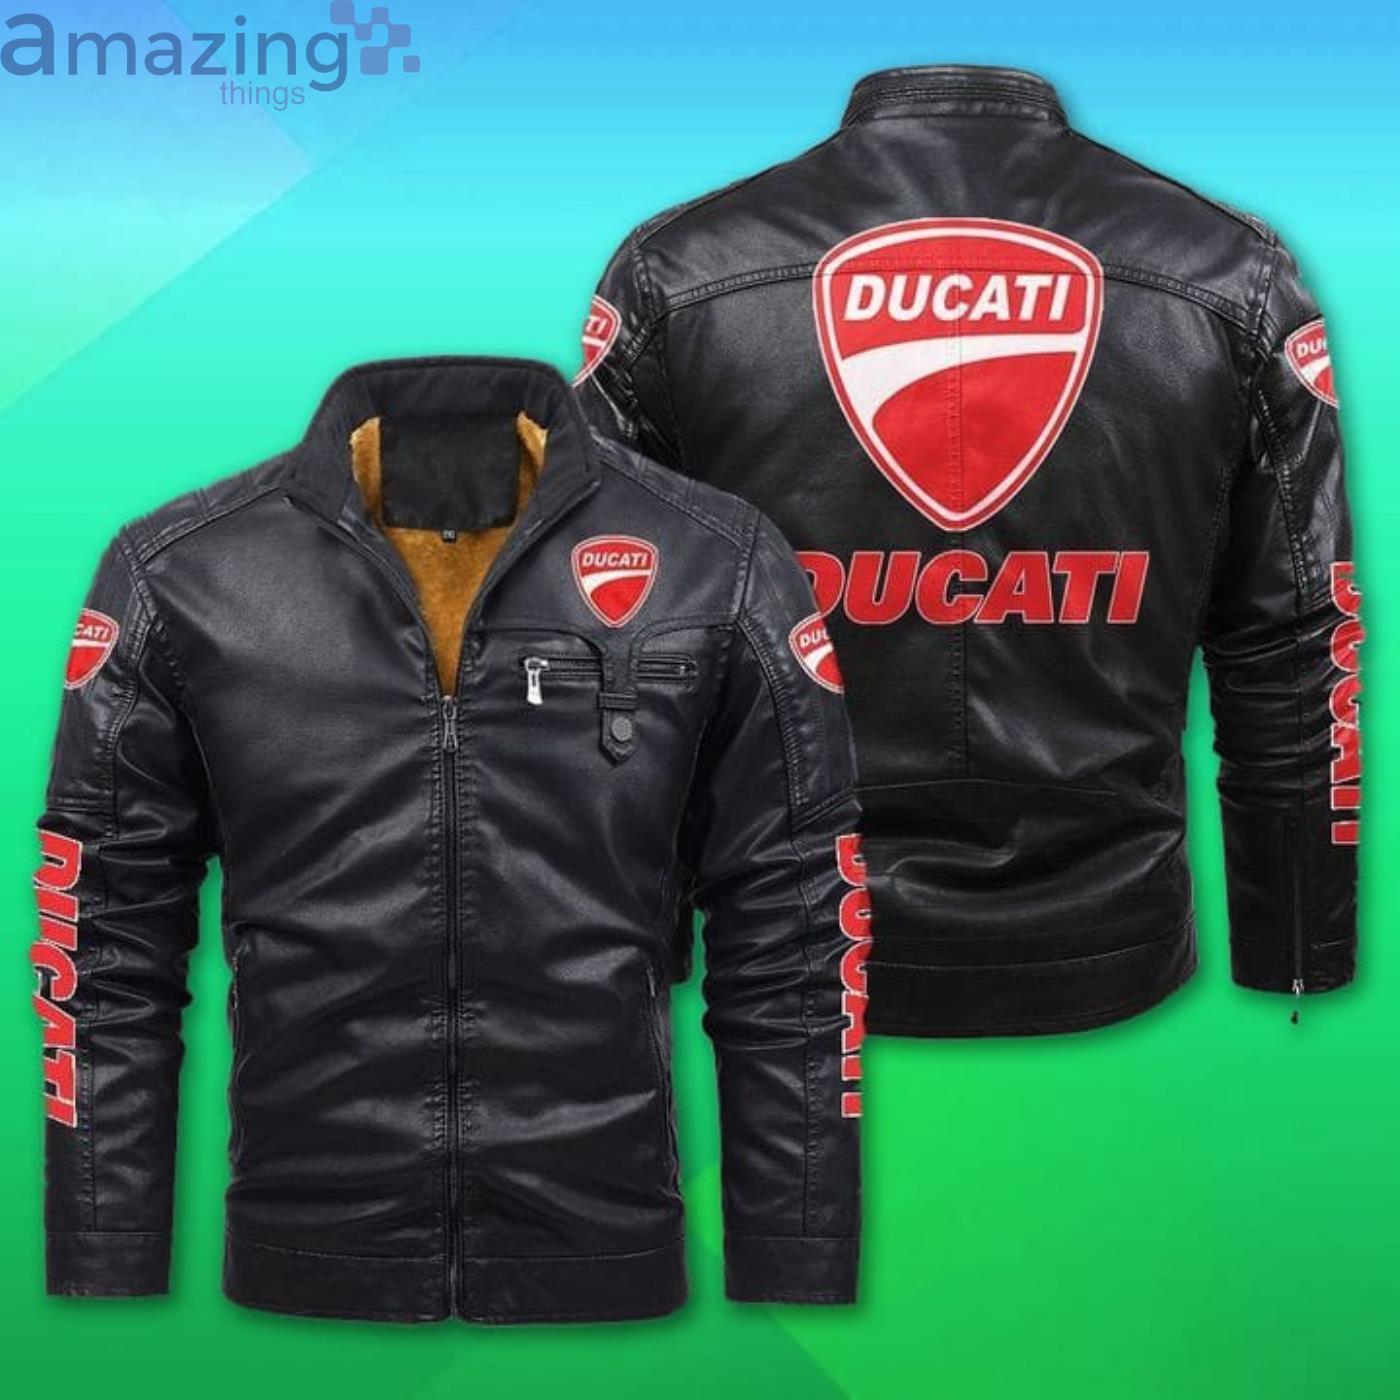 Ducati Fleece Leather Jacket Product Photo 1